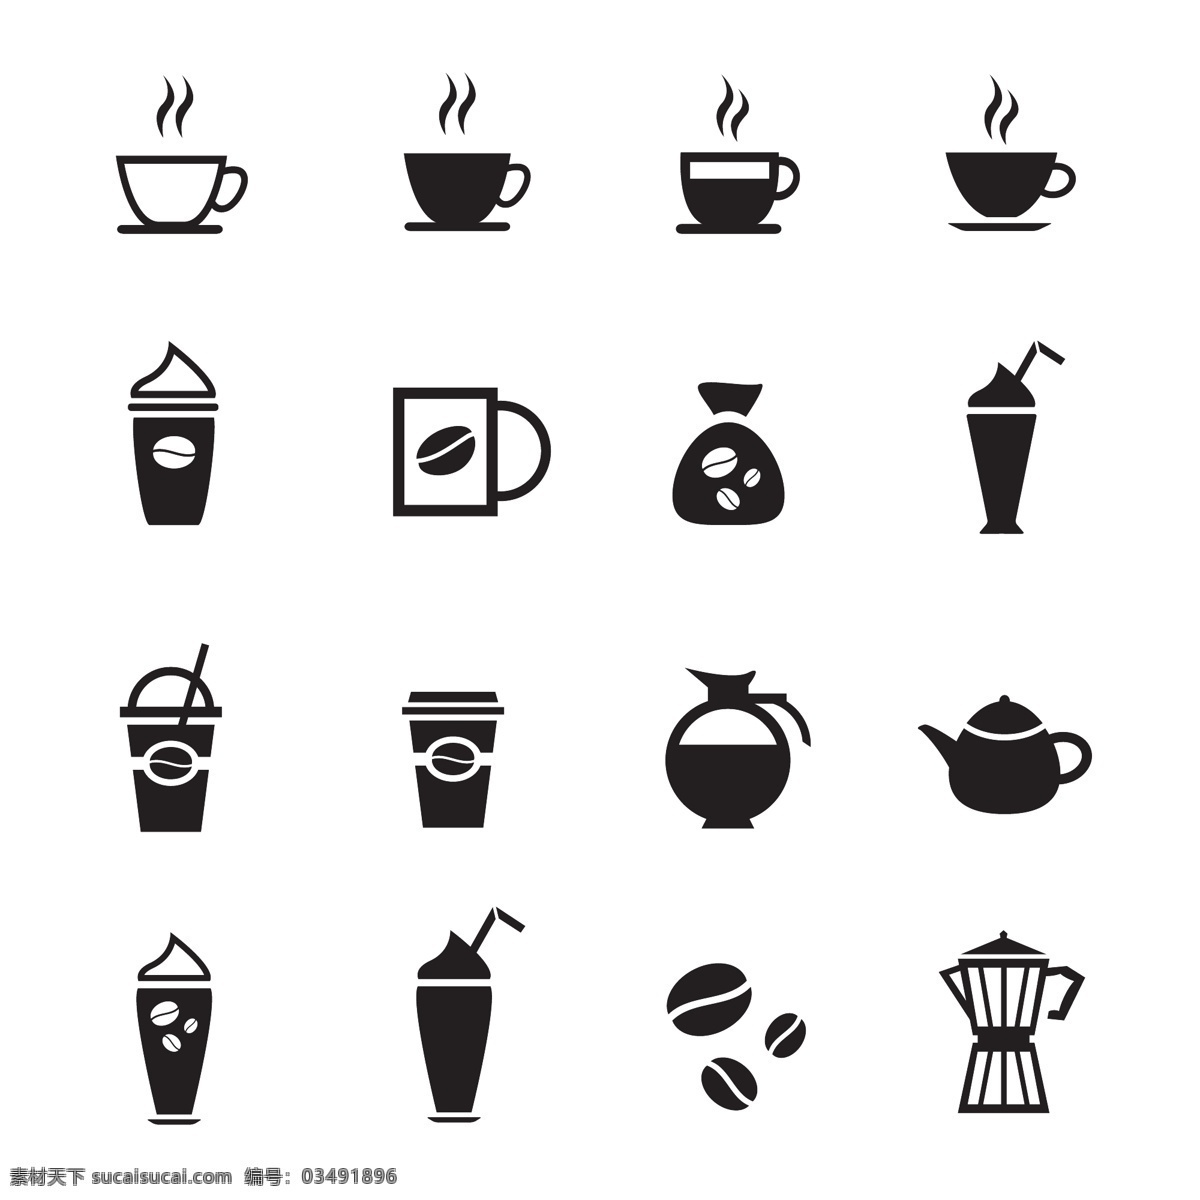 咖啡图标 咖啡 咖啡豆 咖啡杯 咖啡标签 图标 咖啡屋 营养 美味 手绘 时尚 矢量 咖啡主题矢量 餐饮美食 生活百科